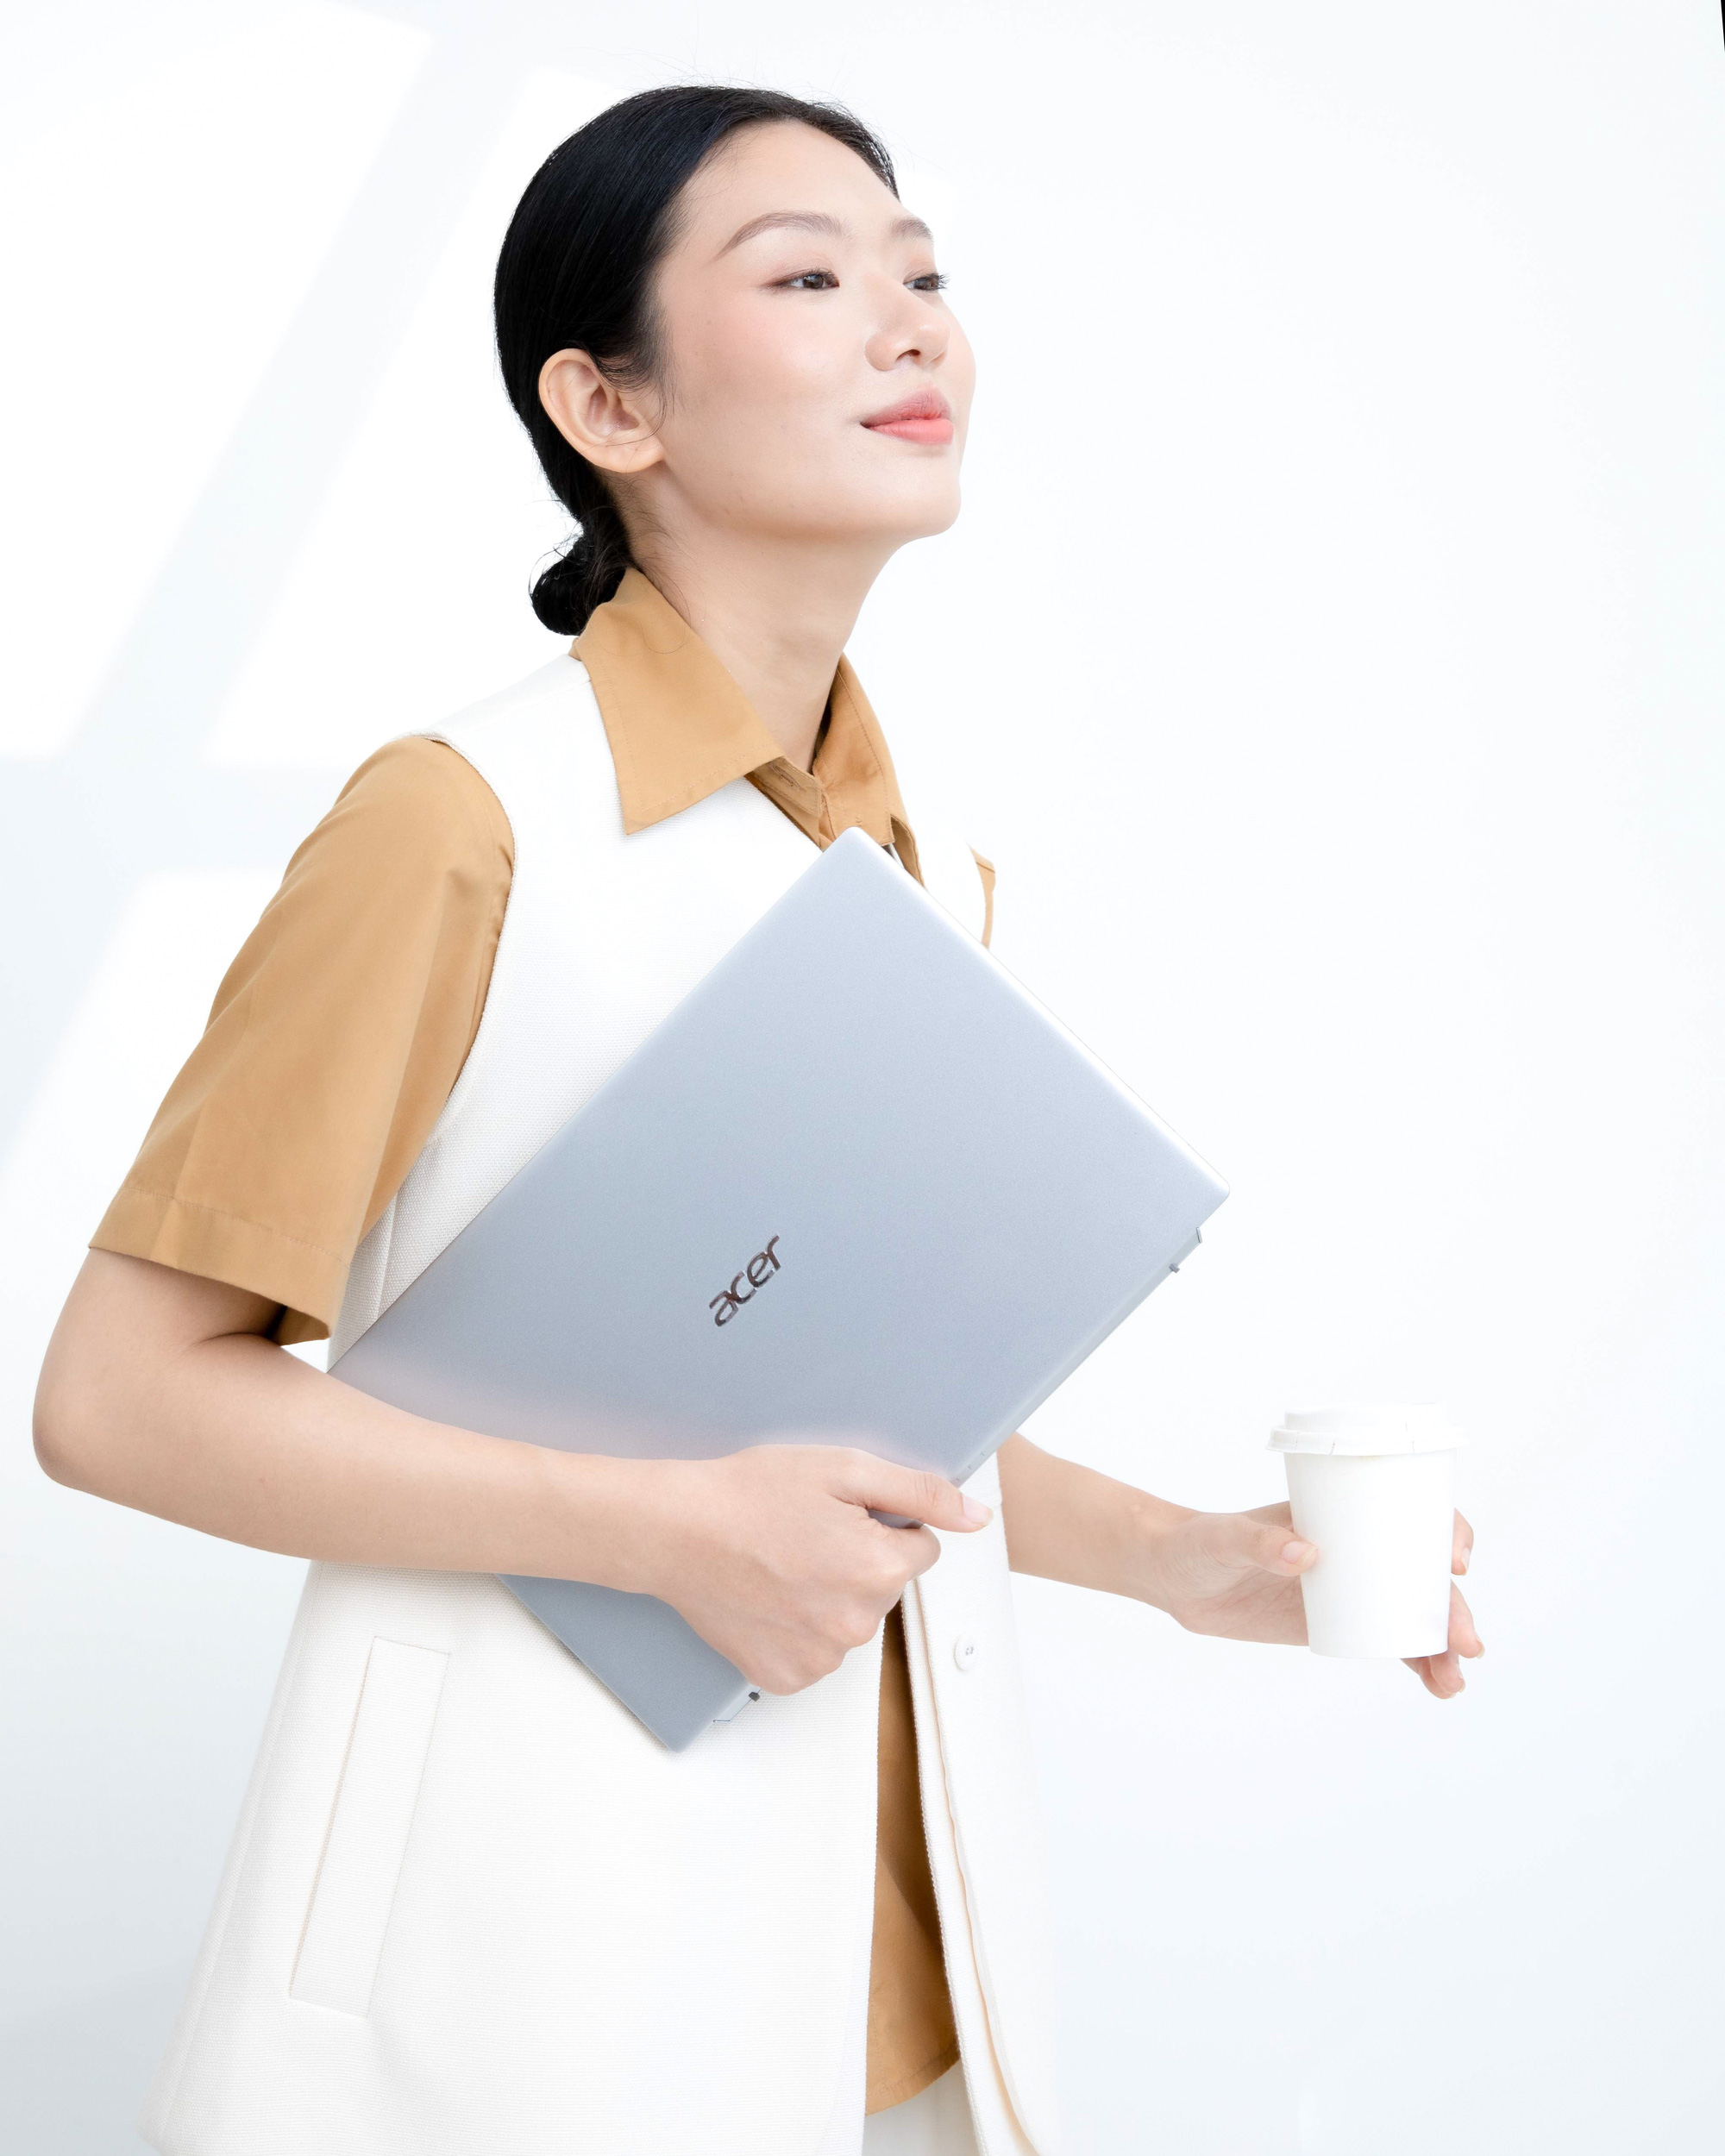 Acer Swift 3 và Aspire 5 - những món quà công nghệ tinh tế và trang nhã với nét chấm phá rất riêng - Ảnh 2.